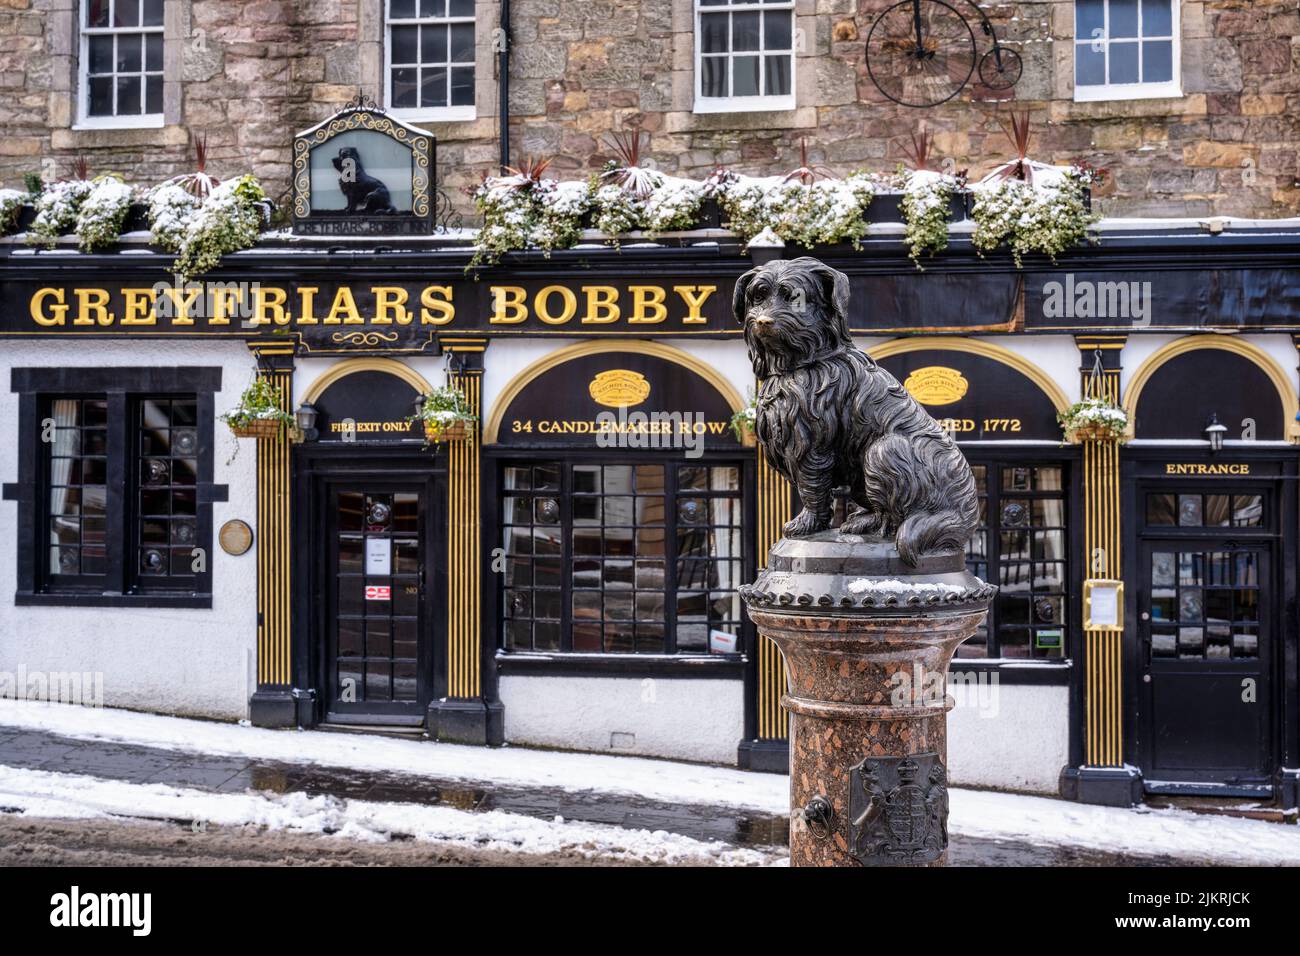 Greyfriars Bobby Public House in Snow, Candlemaker Row, Edinburgh, Schottland, Großbritannien Stockfoto